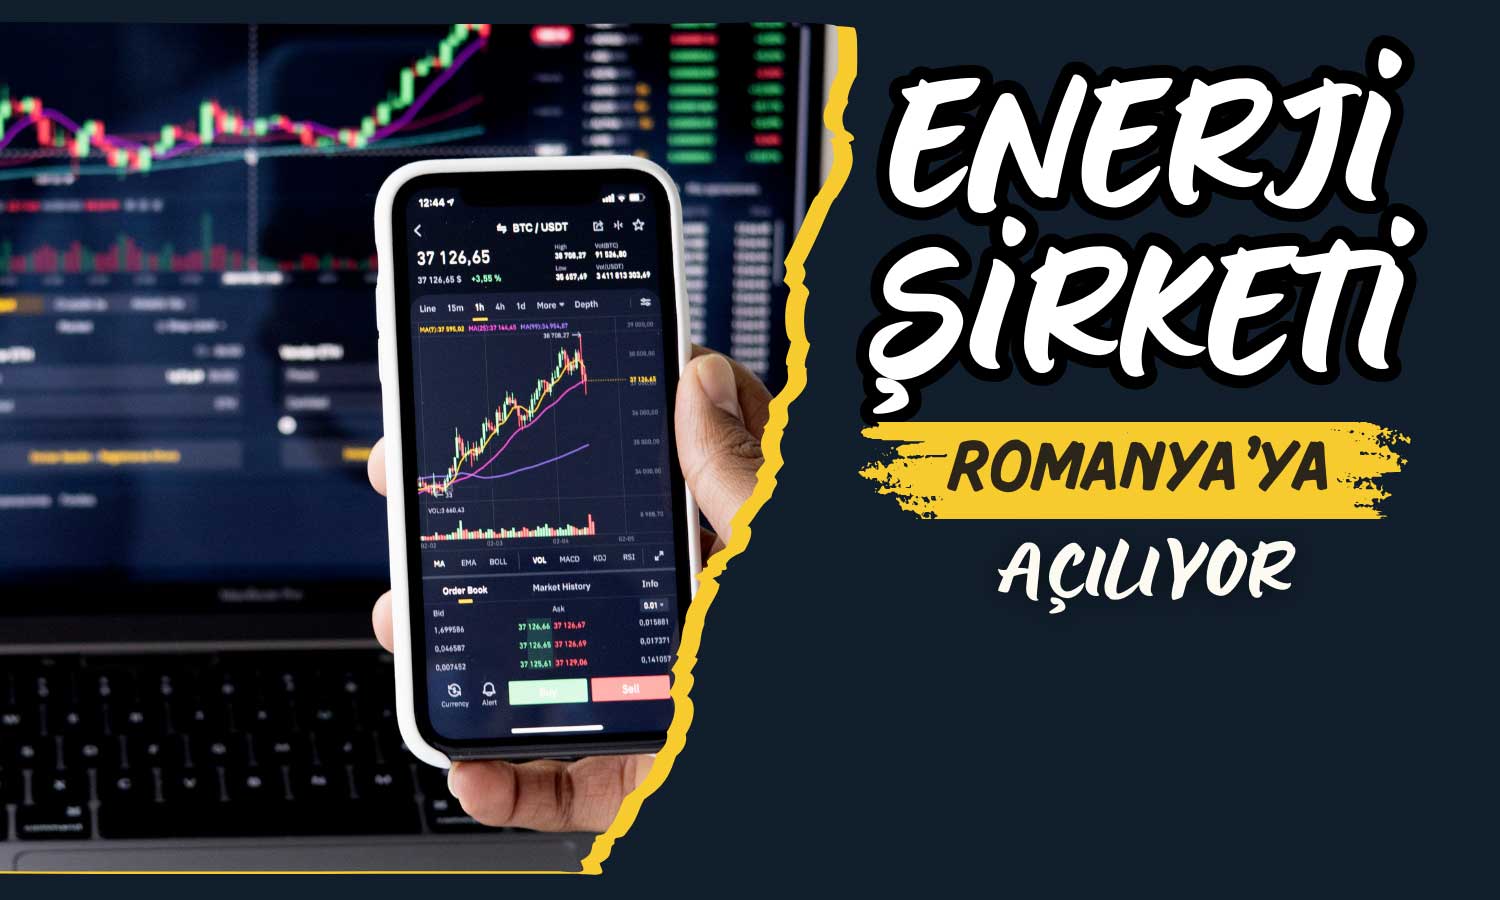 Enerji Şirketinden Romanya’da Büyüme Hareketi